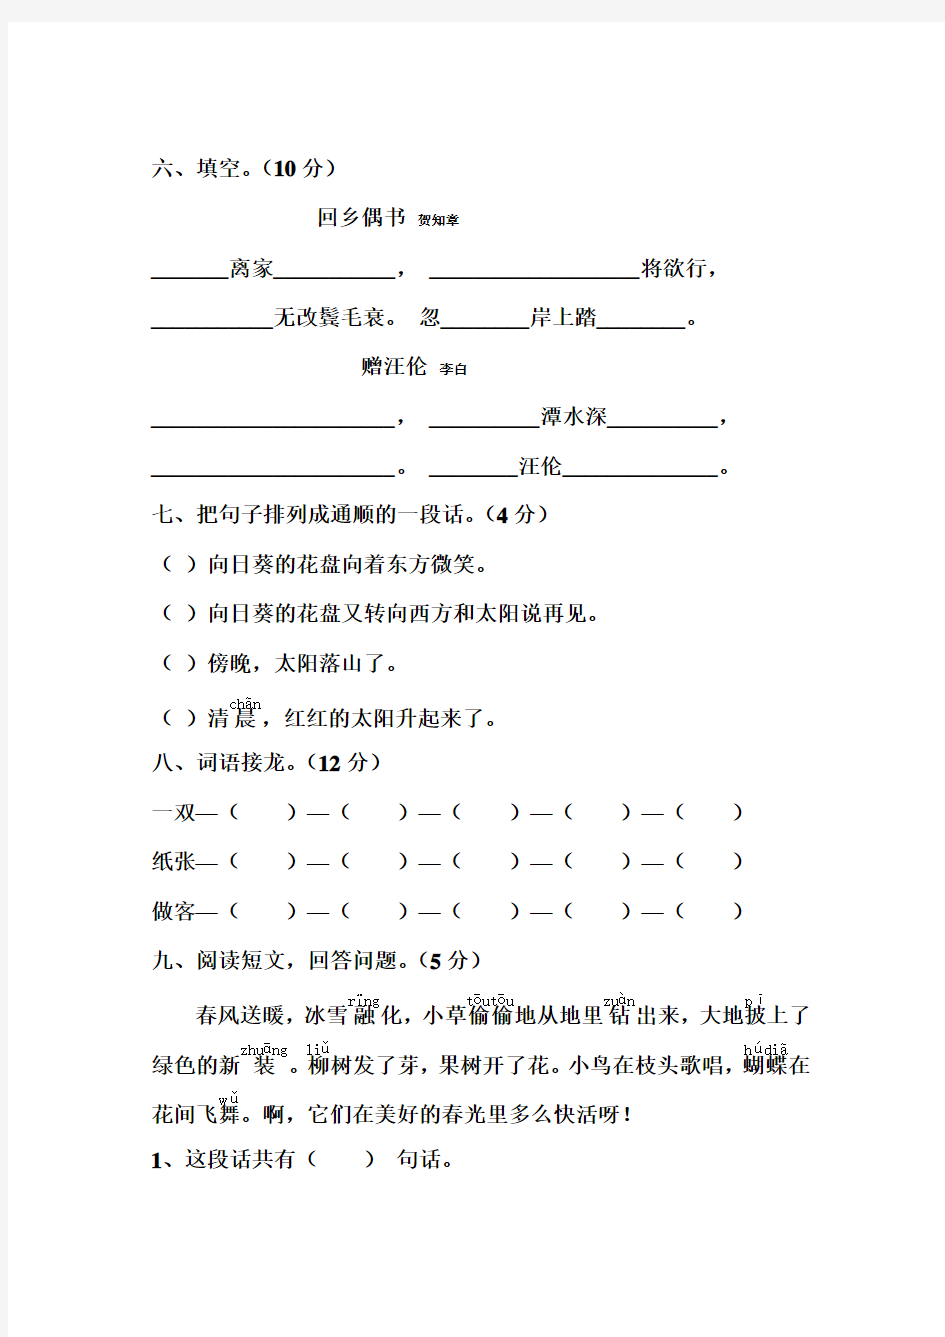 2013年人教版小学语文二年级上册第六单元测试题(两套)-A4纸下载打印